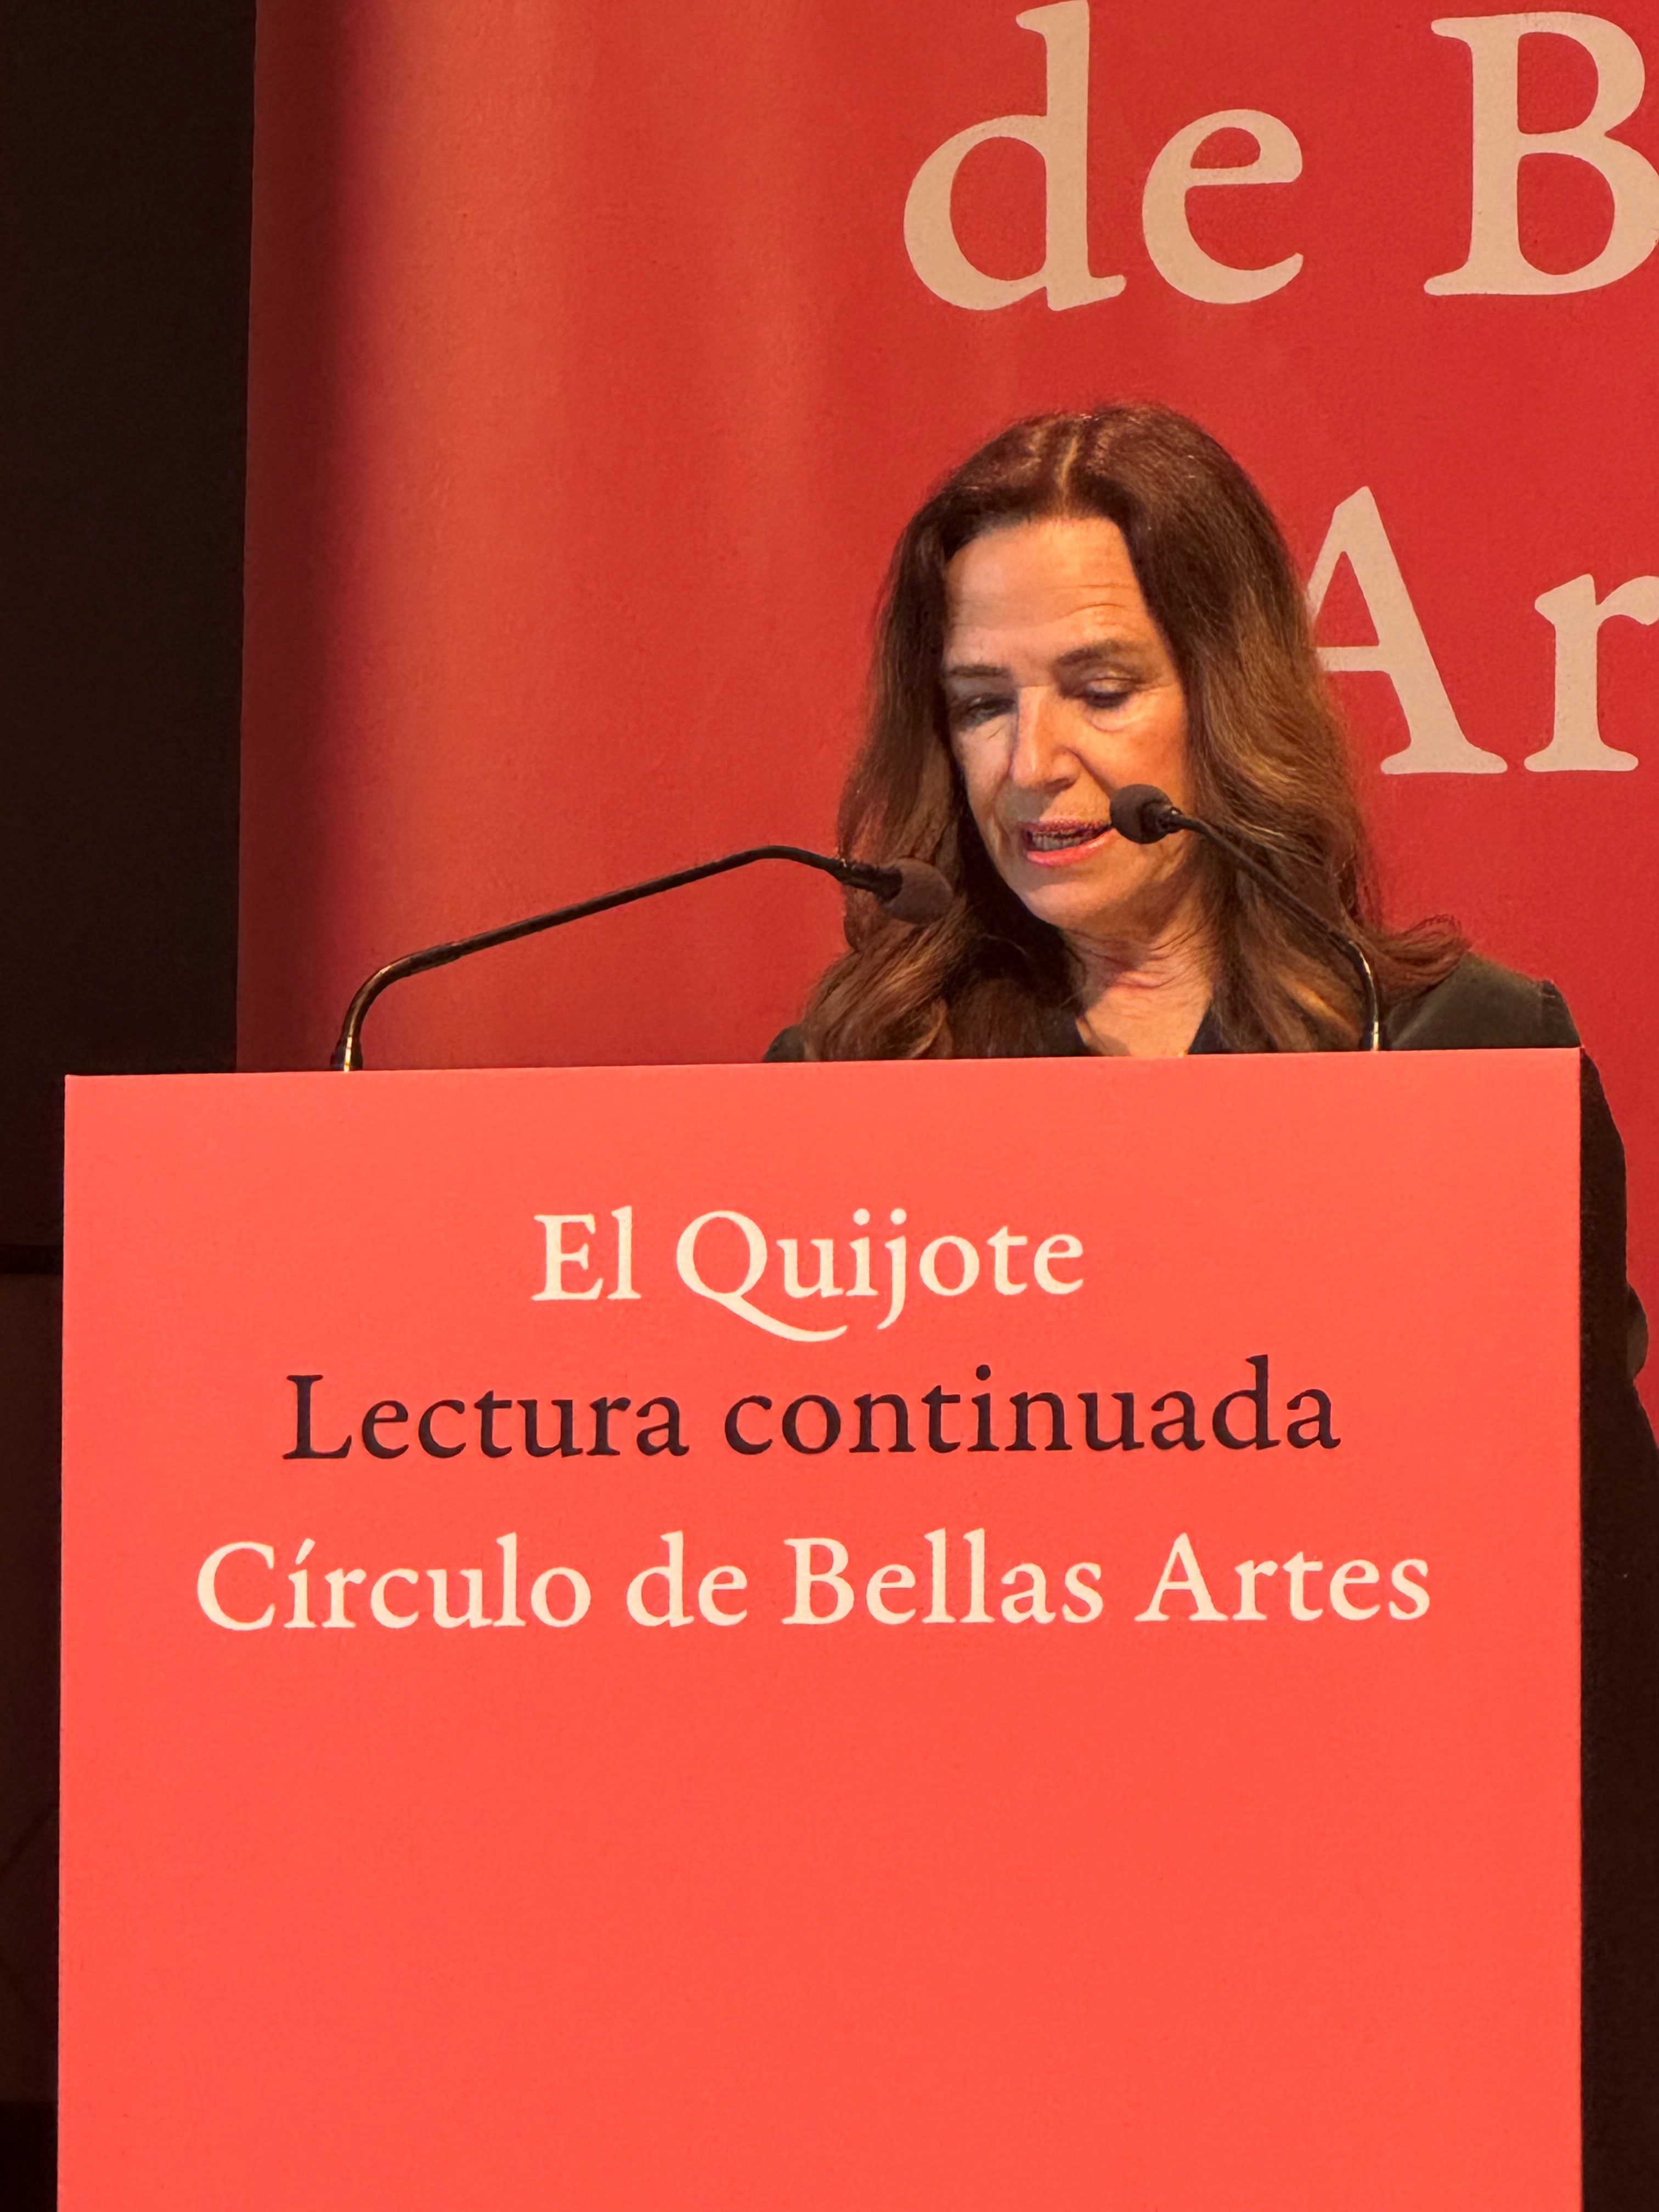 «Vigesimoctava Lectura continuada del Quijote en el Círculo de Bellas Artes»